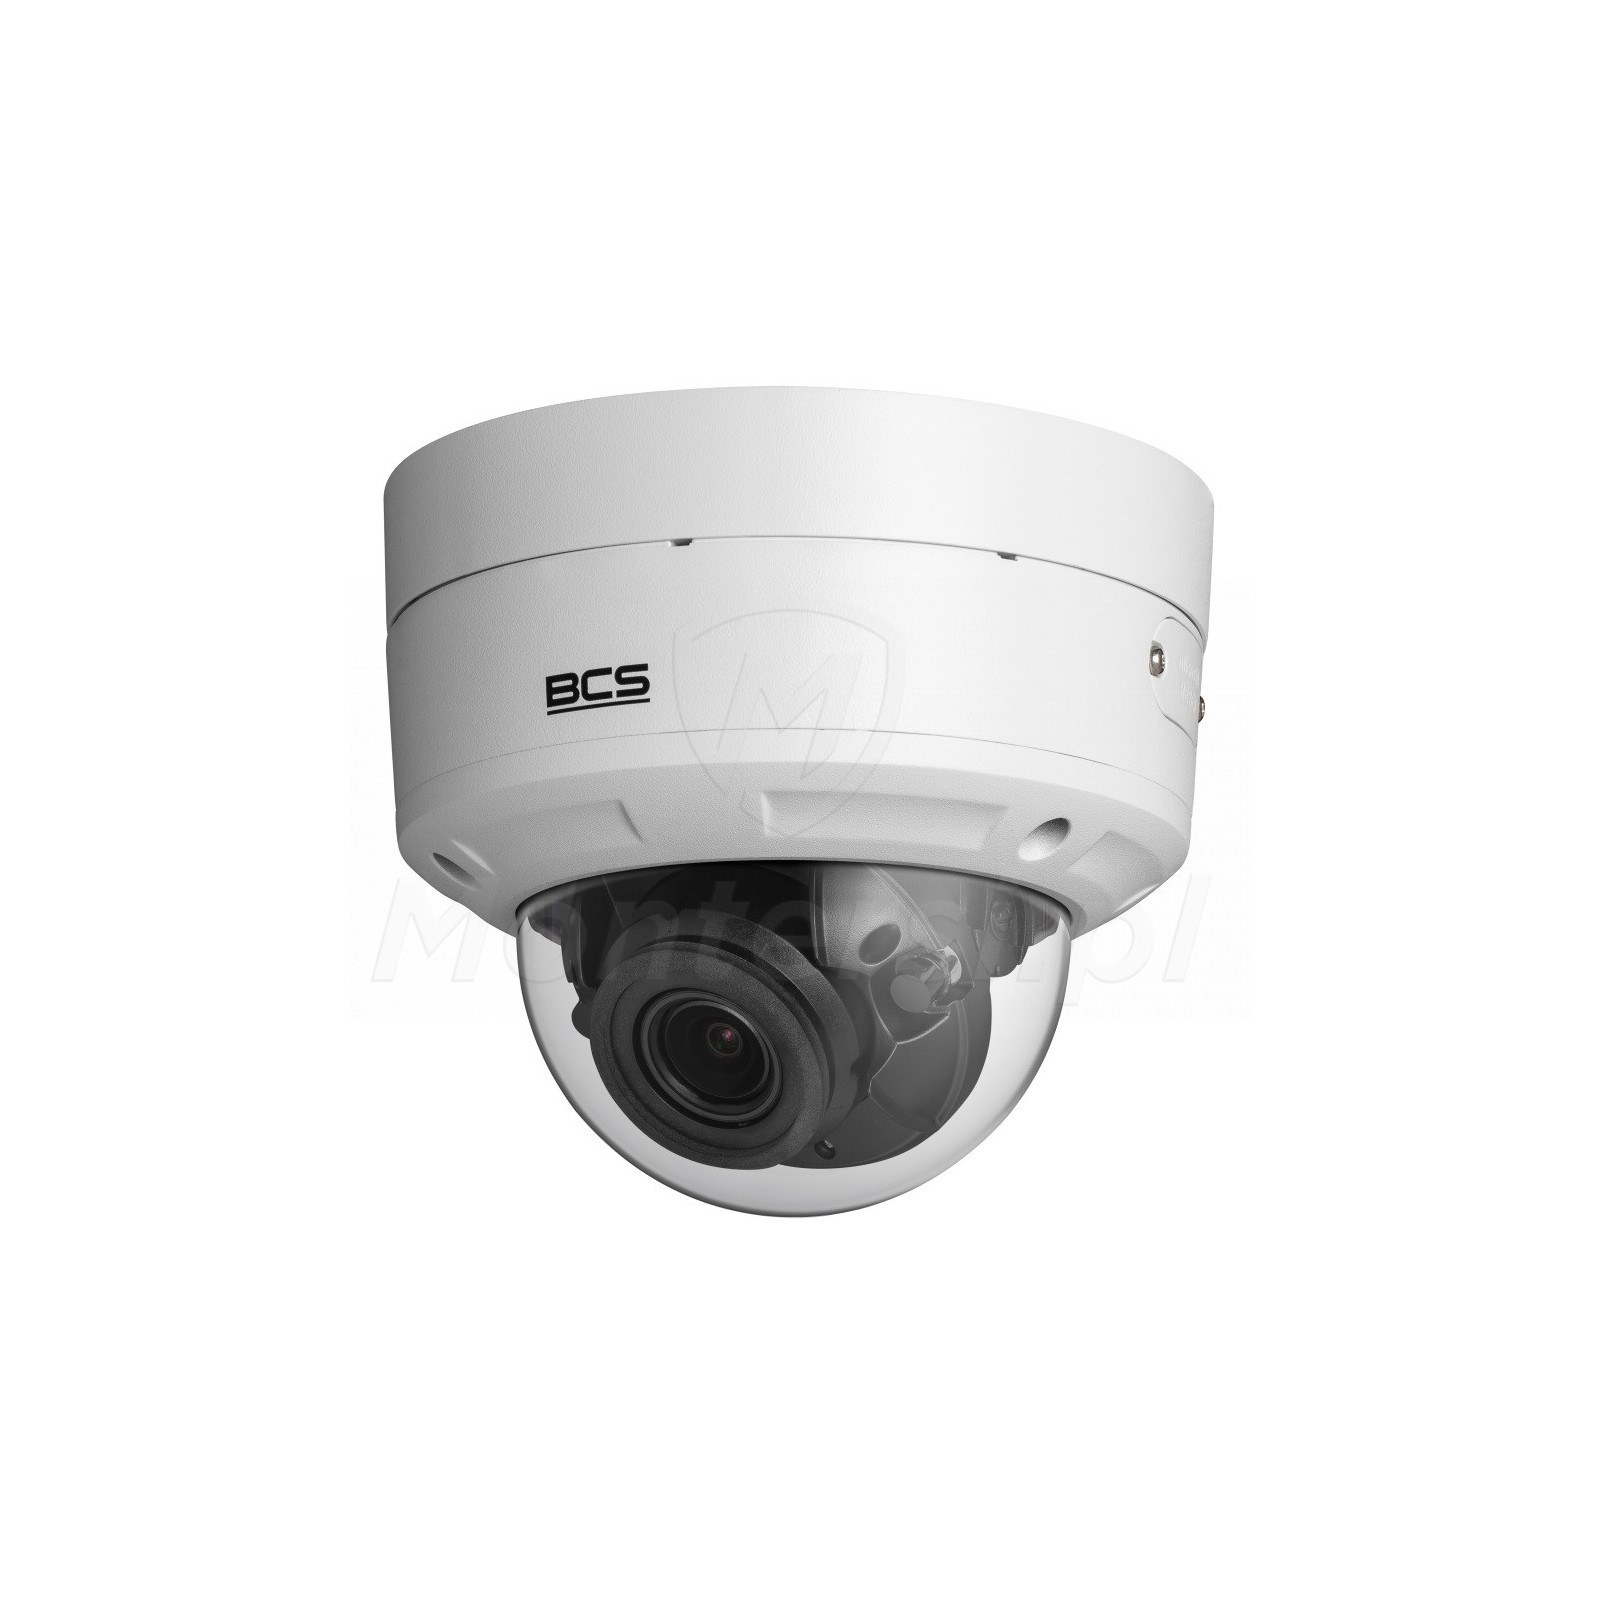 Wandaloodporna kamera IP BCS-V-DIP54VSR4-Ai2